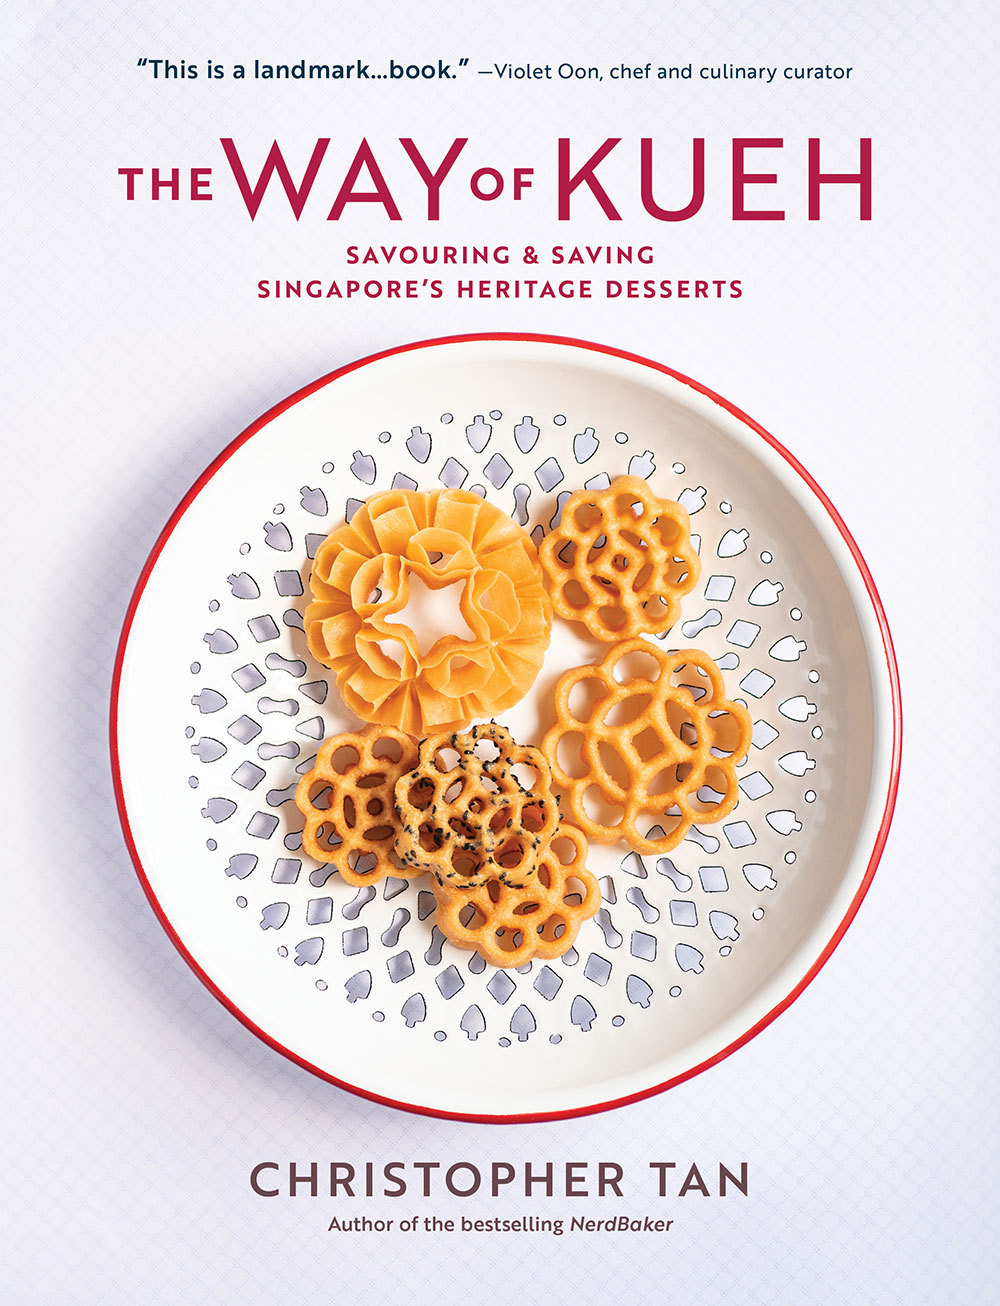 新加坡美食作家兼烹饪导师陈耀威（Christopher Tan）推出新书《The Way of Kueh》，记录新加坡的糕点文化与食谱。